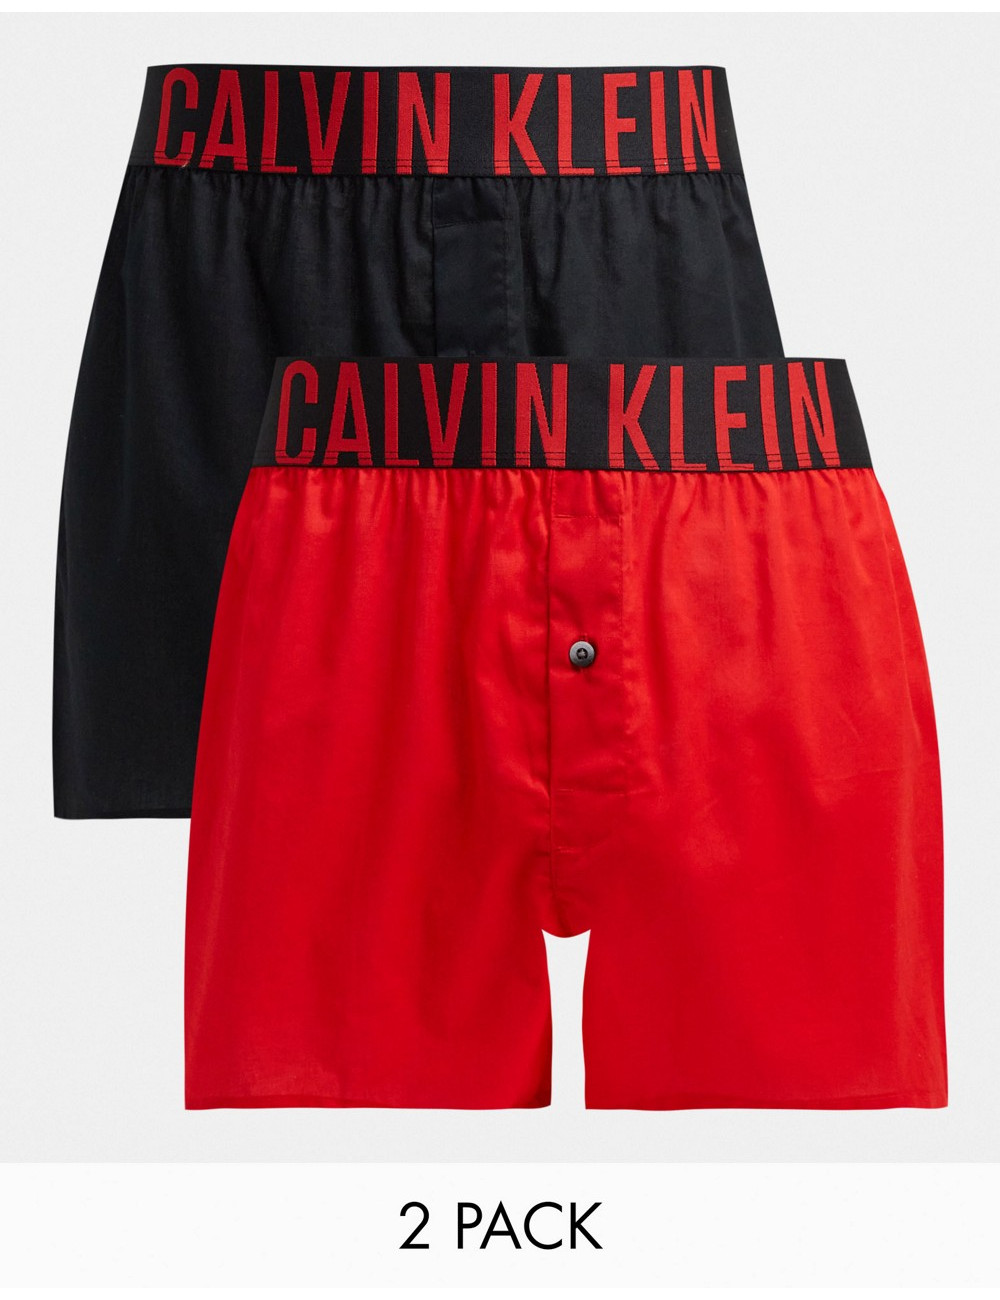 Calvin Klein boxer brief in...